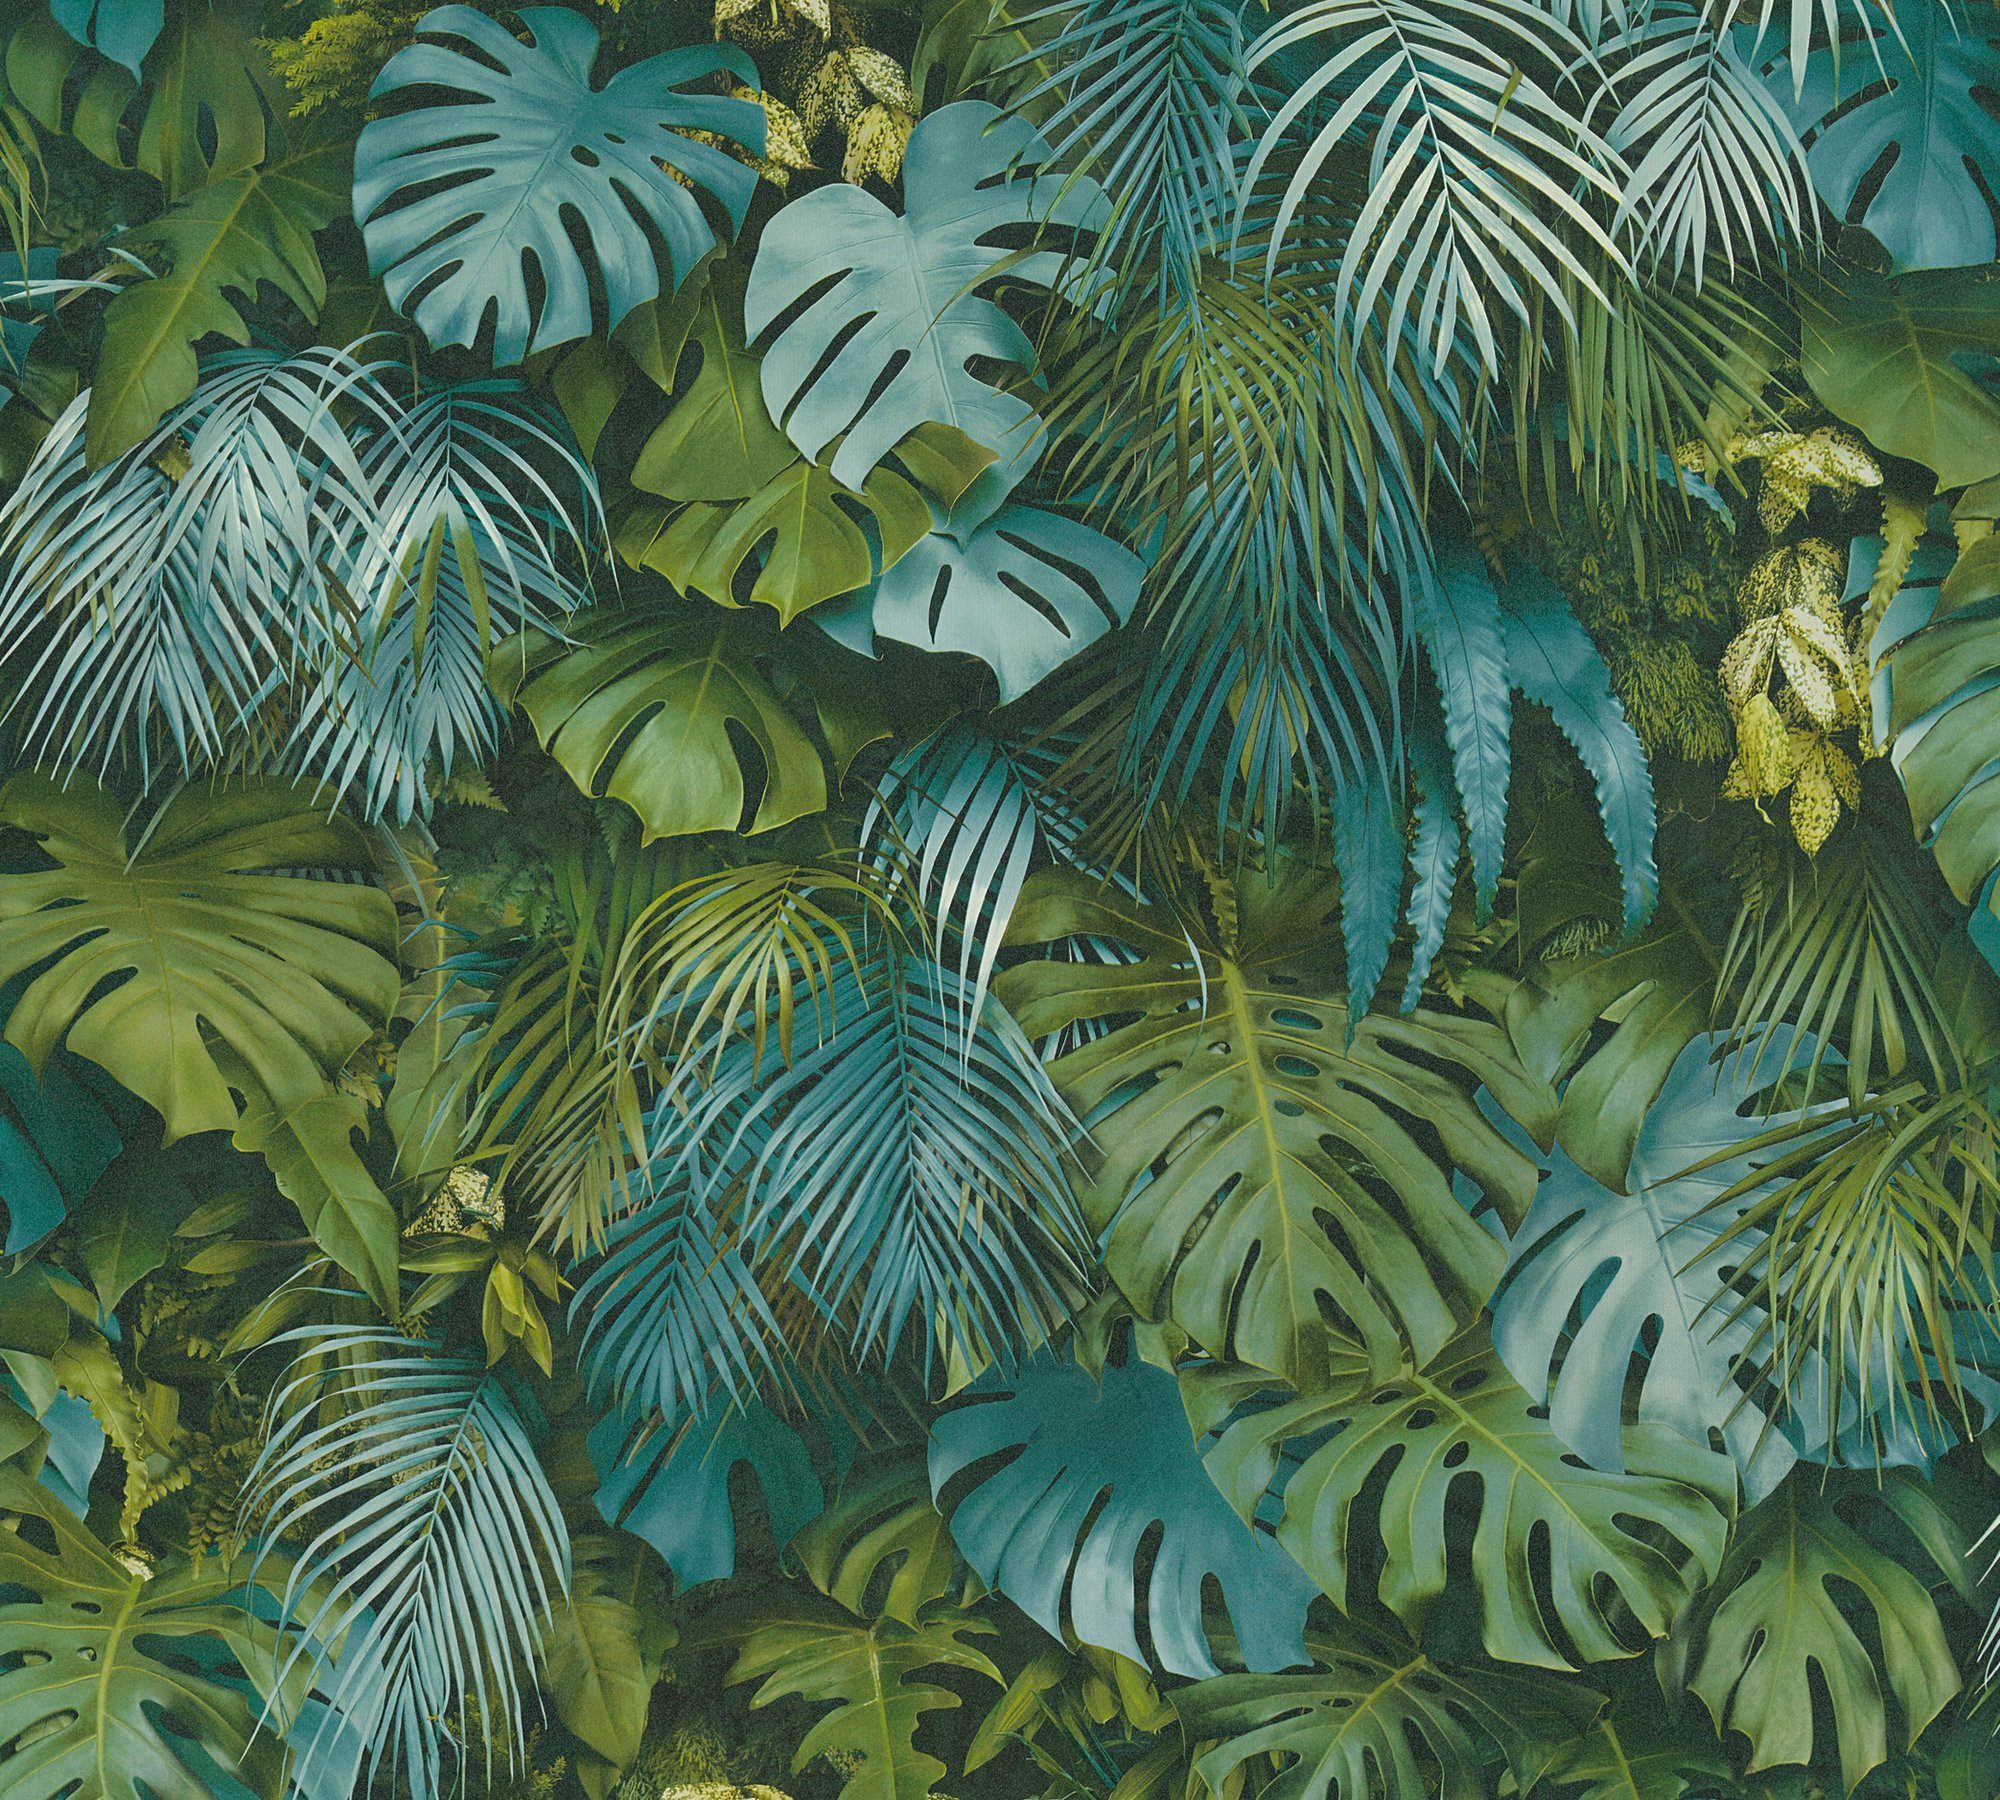 Dschungel bunt/blau in Tapete mit A.S. Palmenprint Vliestapete Greenery Palmentapete floral, Création Dschungel Optik,